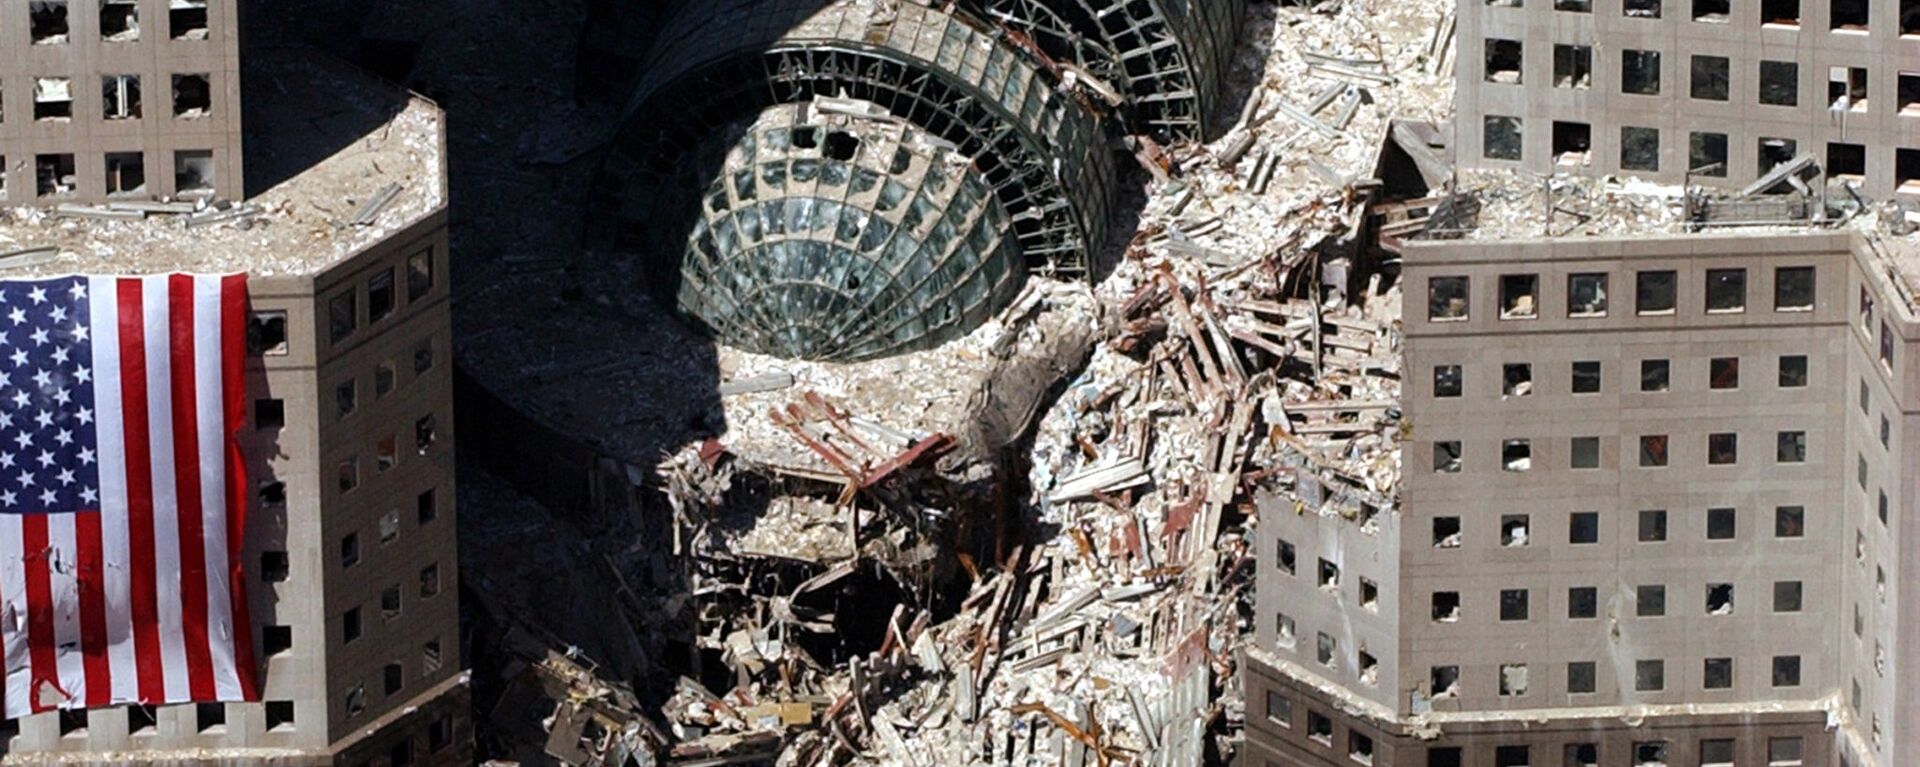 Кусок обрушившегося здания после атаки 9/11 в Нью-Йорке  - Sputnik Молдова, 1920, 03.09.2021